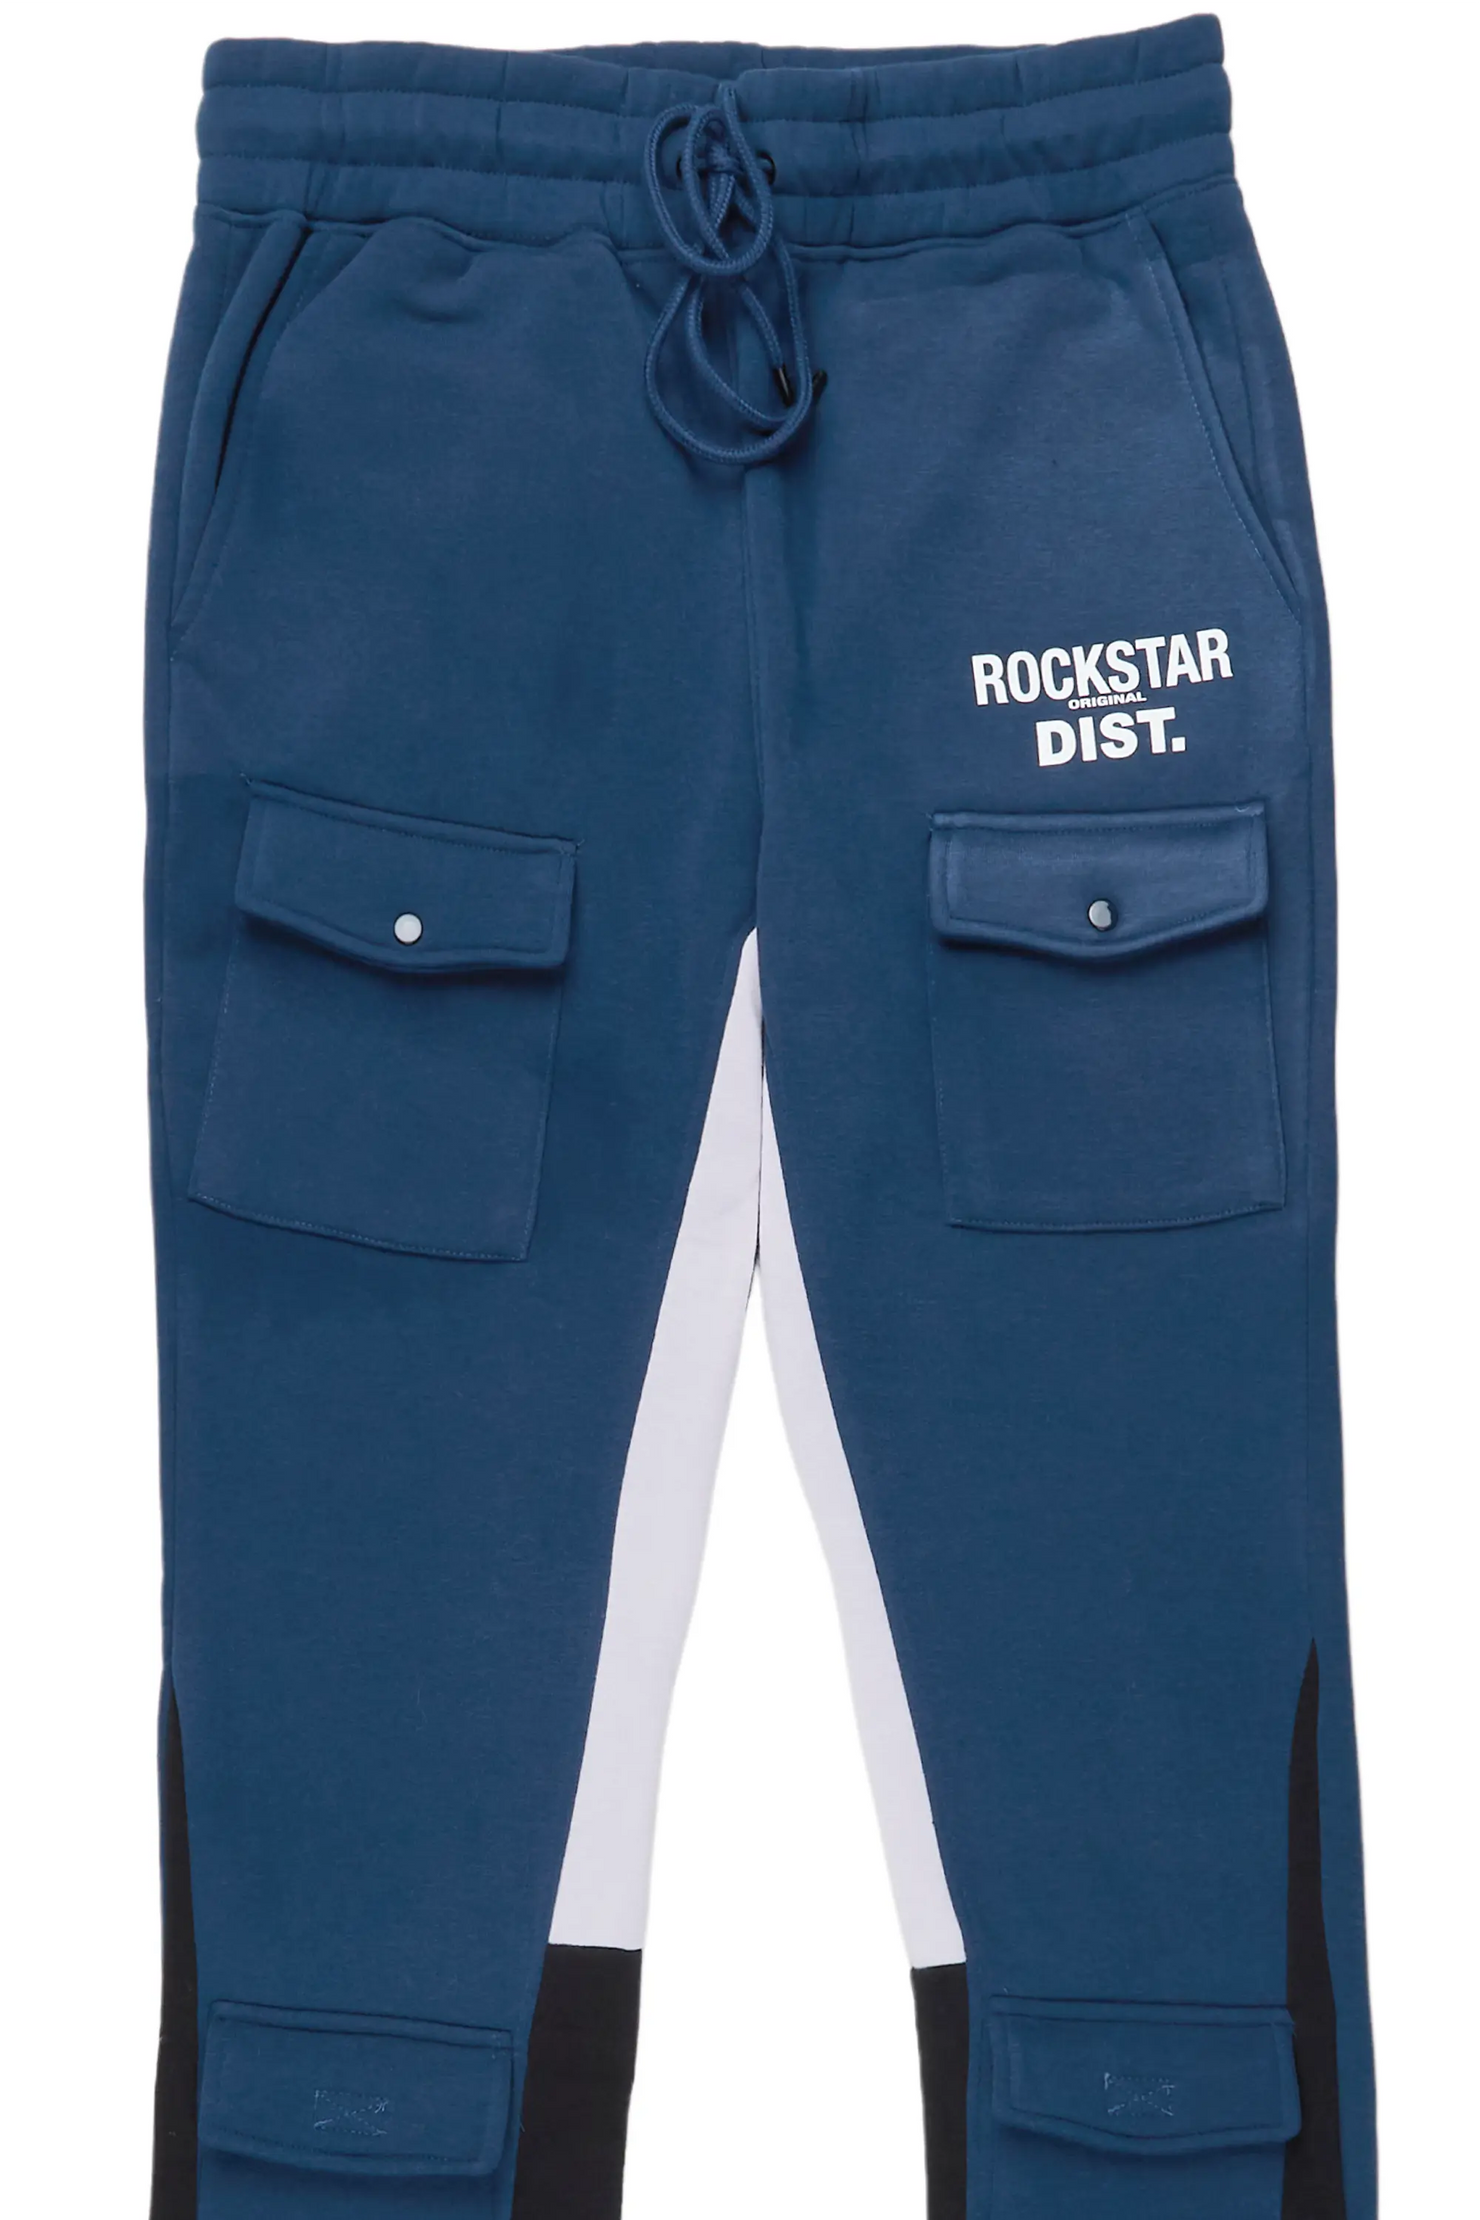 Everest Black Stacked Flare Track Pant– Rockstar Original